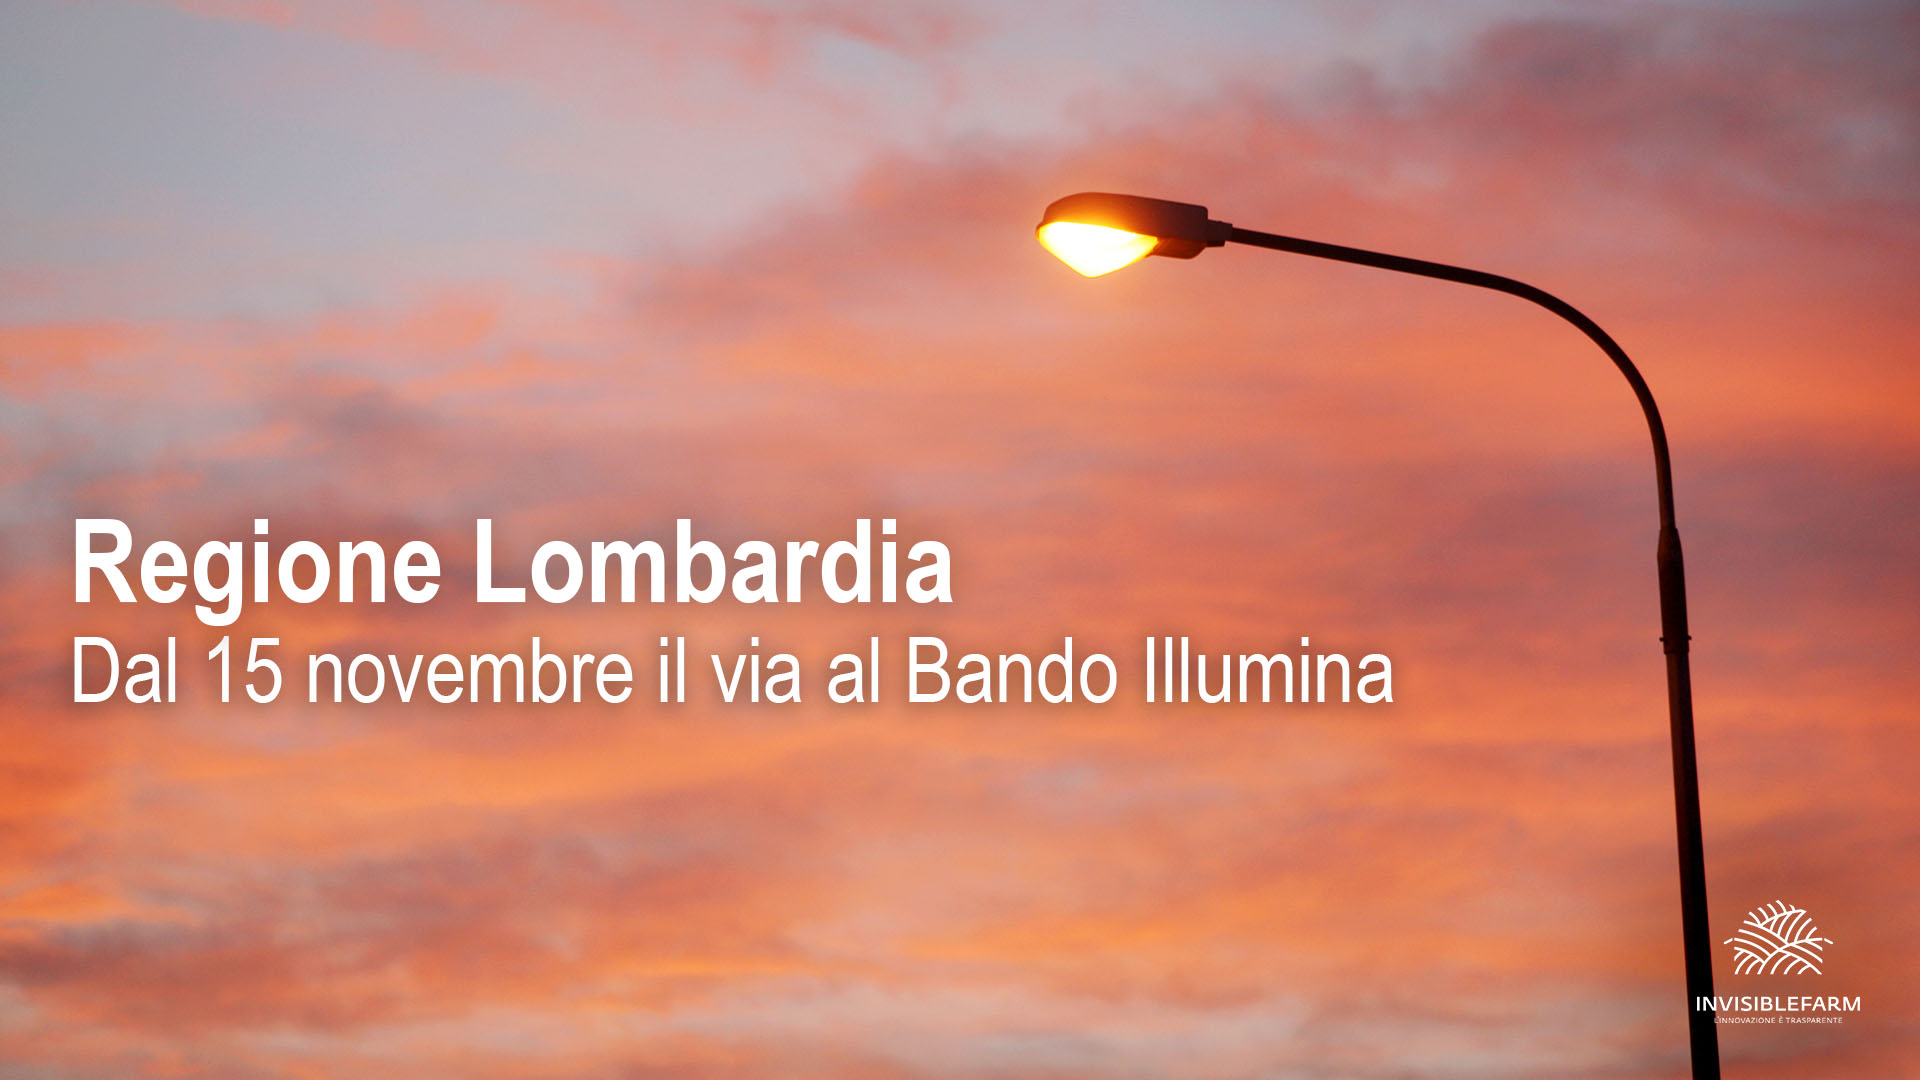 Articolo sulle specifiche per accedere al Bando Illumina di Regione Lombardia